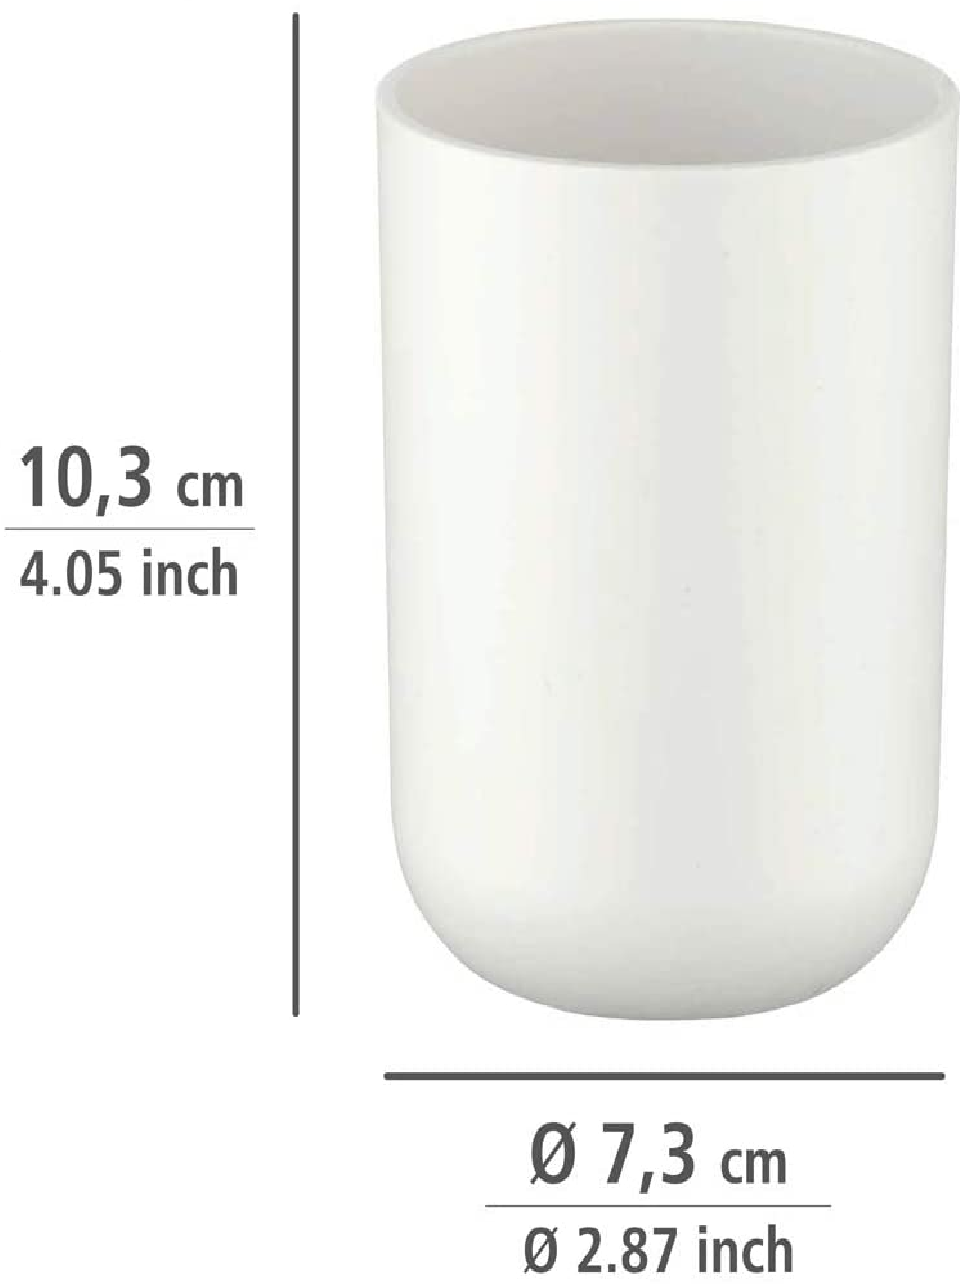 Zahnputzbecher Brasil Weiß - Zahnbürstenhalter für Zahnbürste und Zahnpasta, absolut bruchsicher, Kunststoff (TPE), 7.3 x 10.3 x 7.3 cm, Weiß